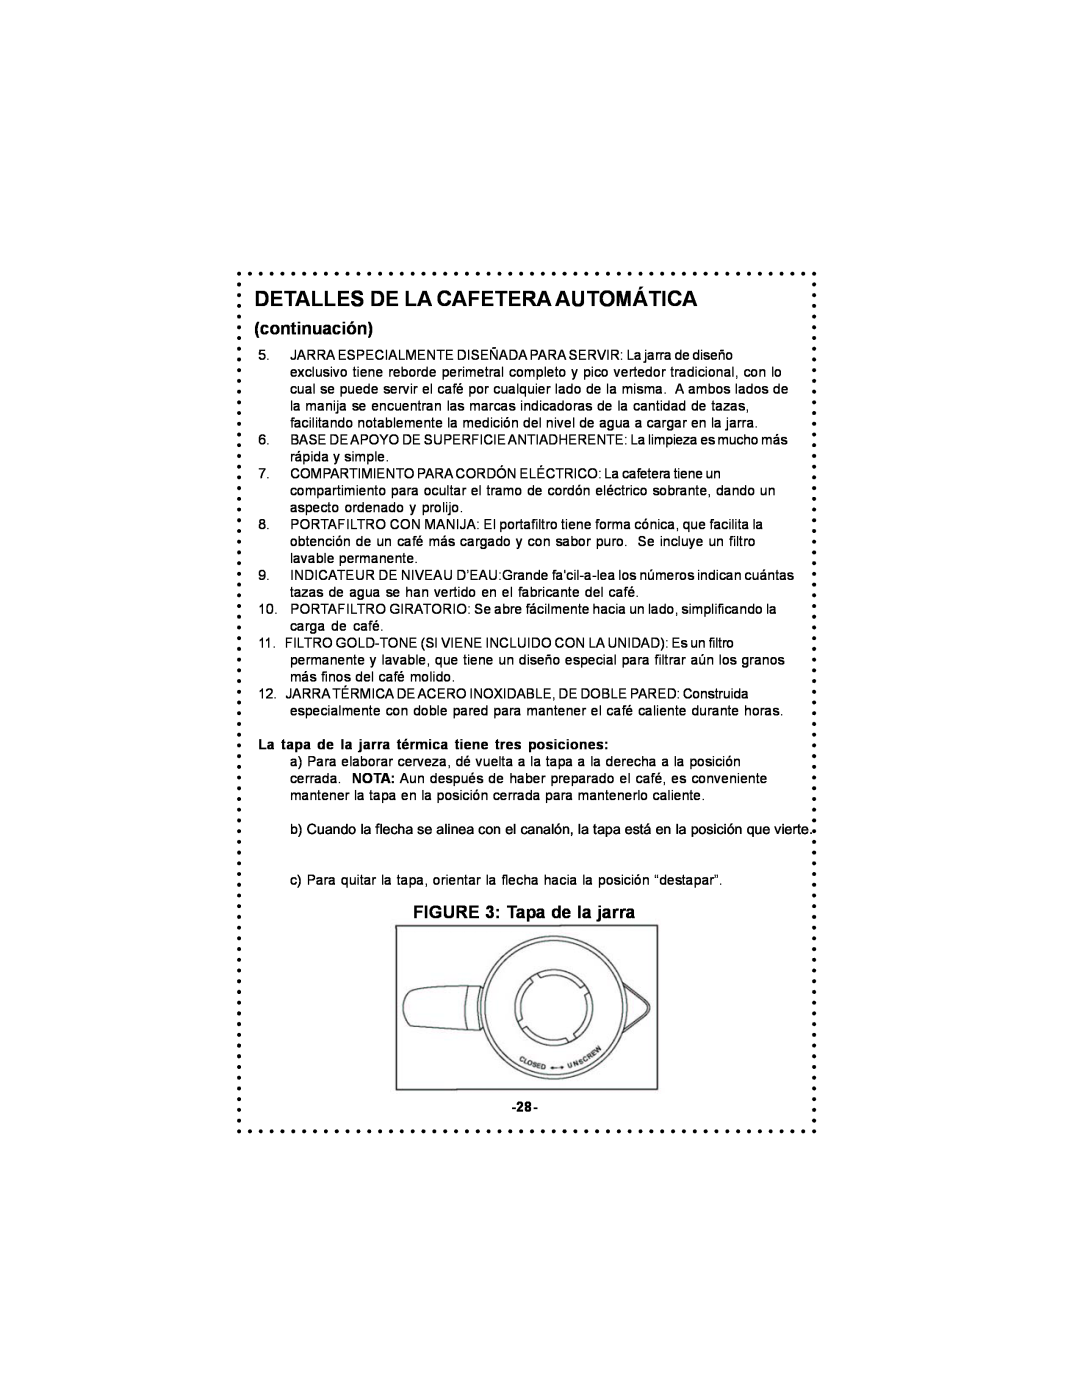 DeLonghi DC54TC, DC55TC instruction manual Detalles De La Cafetera Automática, continuación, Tapa de la jarra 